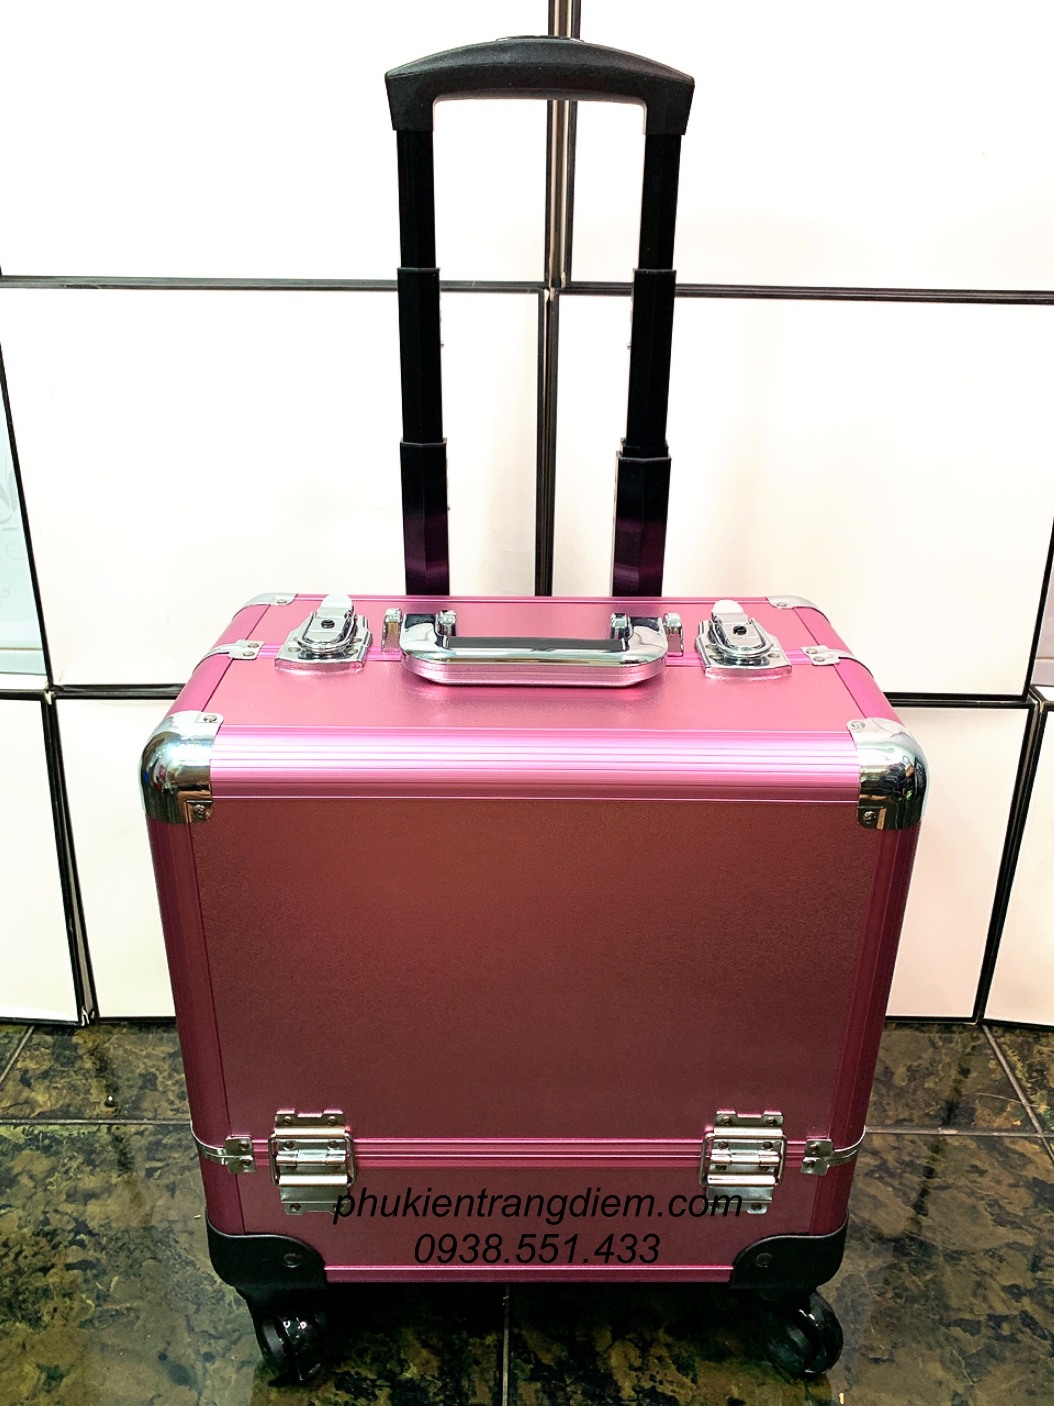 cốp vali kéo make up chuyên nghiệp màu hồng